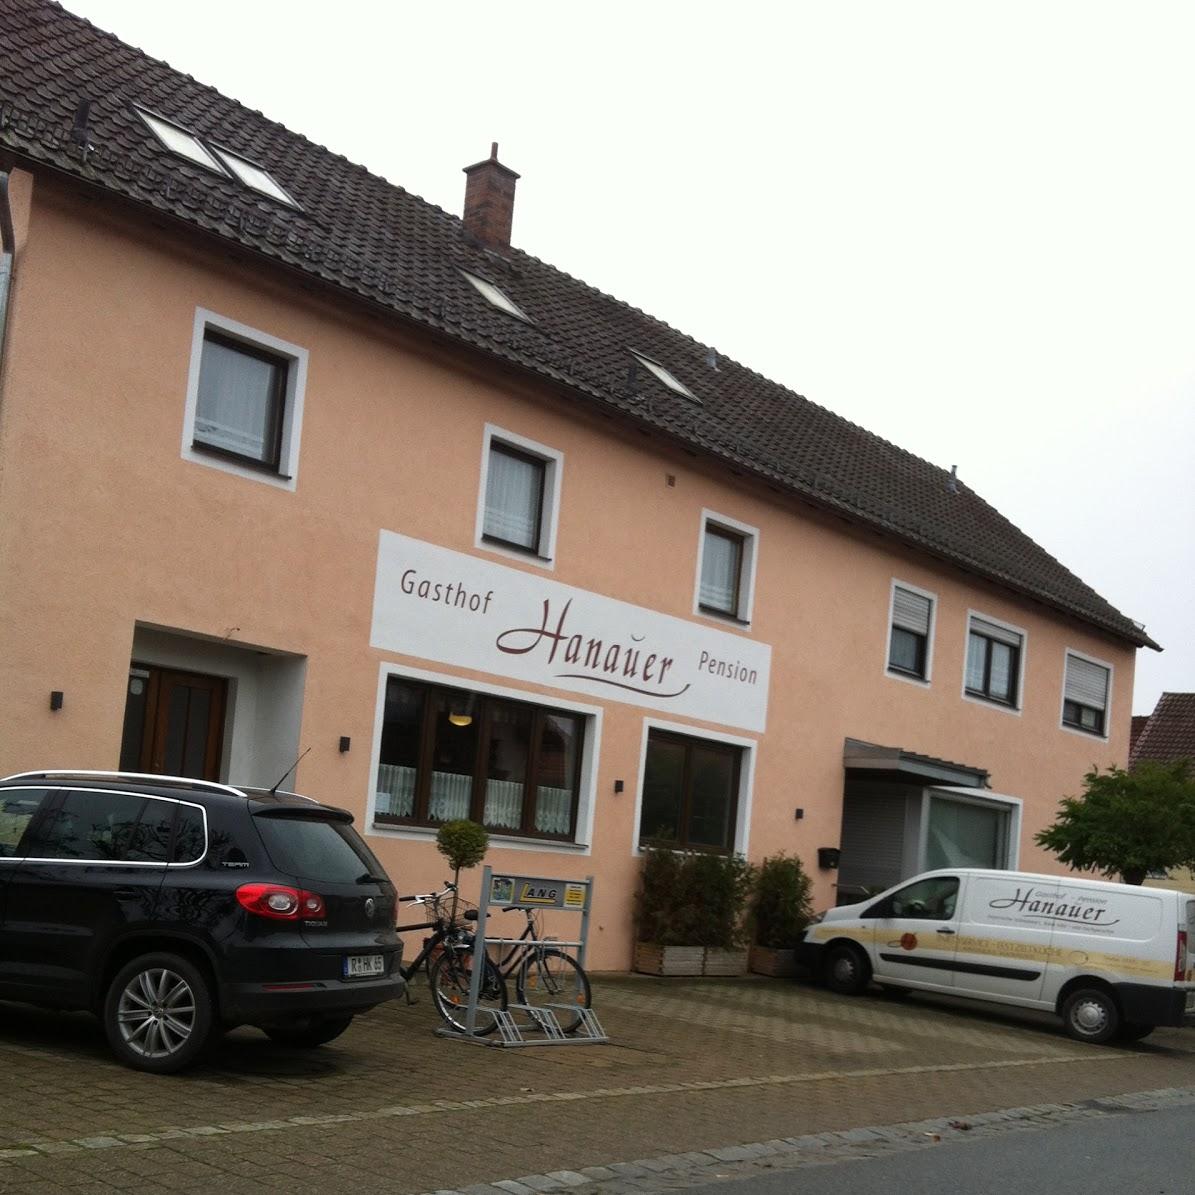 Restaurant "Gasthof-Pension Hanauer" in  Pfatter